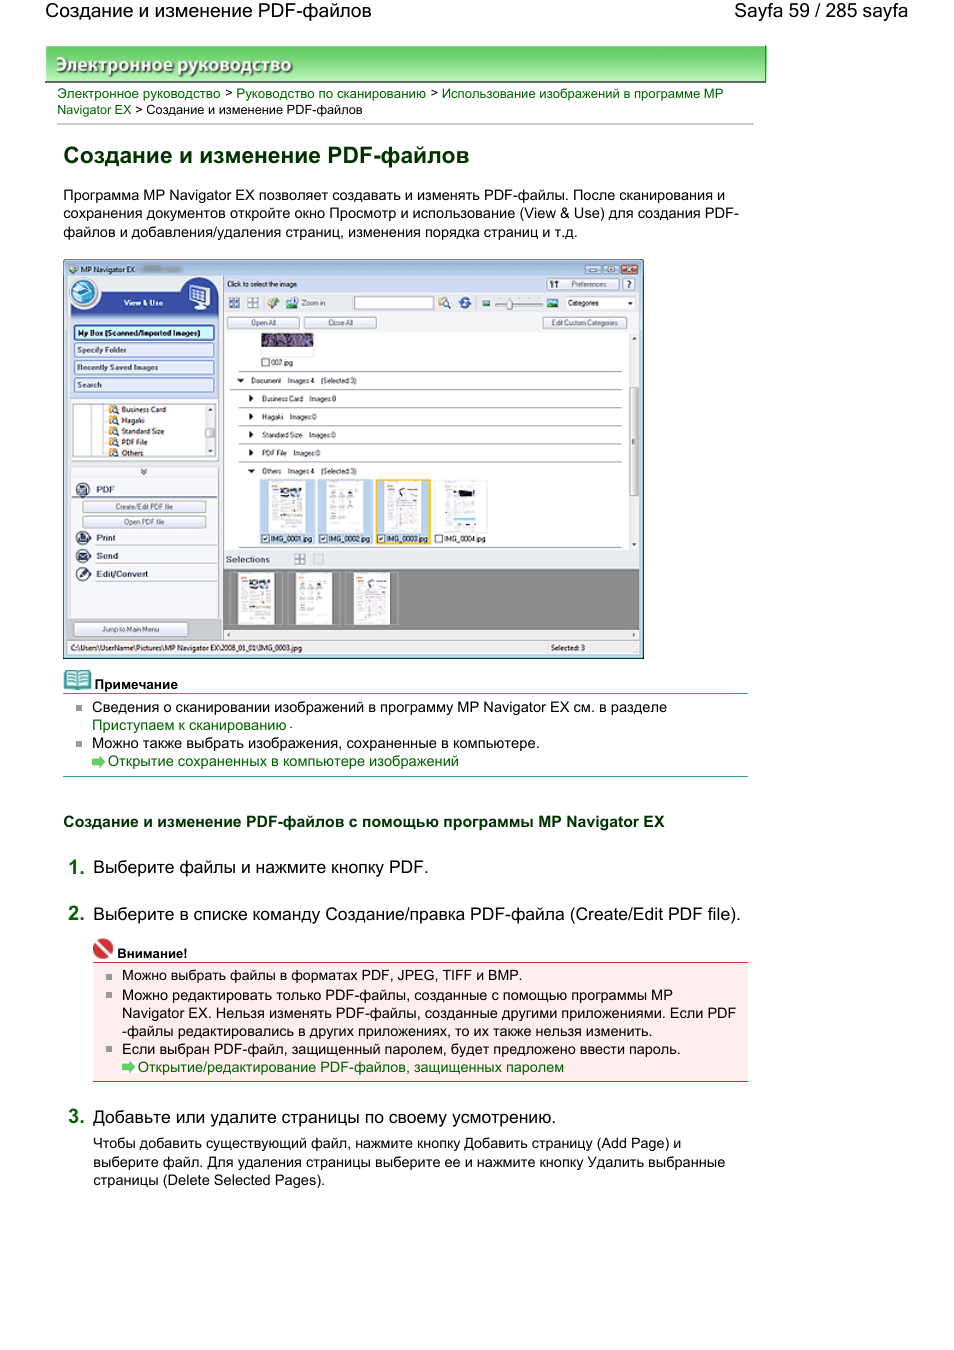 Создание и изменение pdf-файлов | Инструкция по эксплуатации Canon CanoScan LiDE 200 | Страница 59 / 285